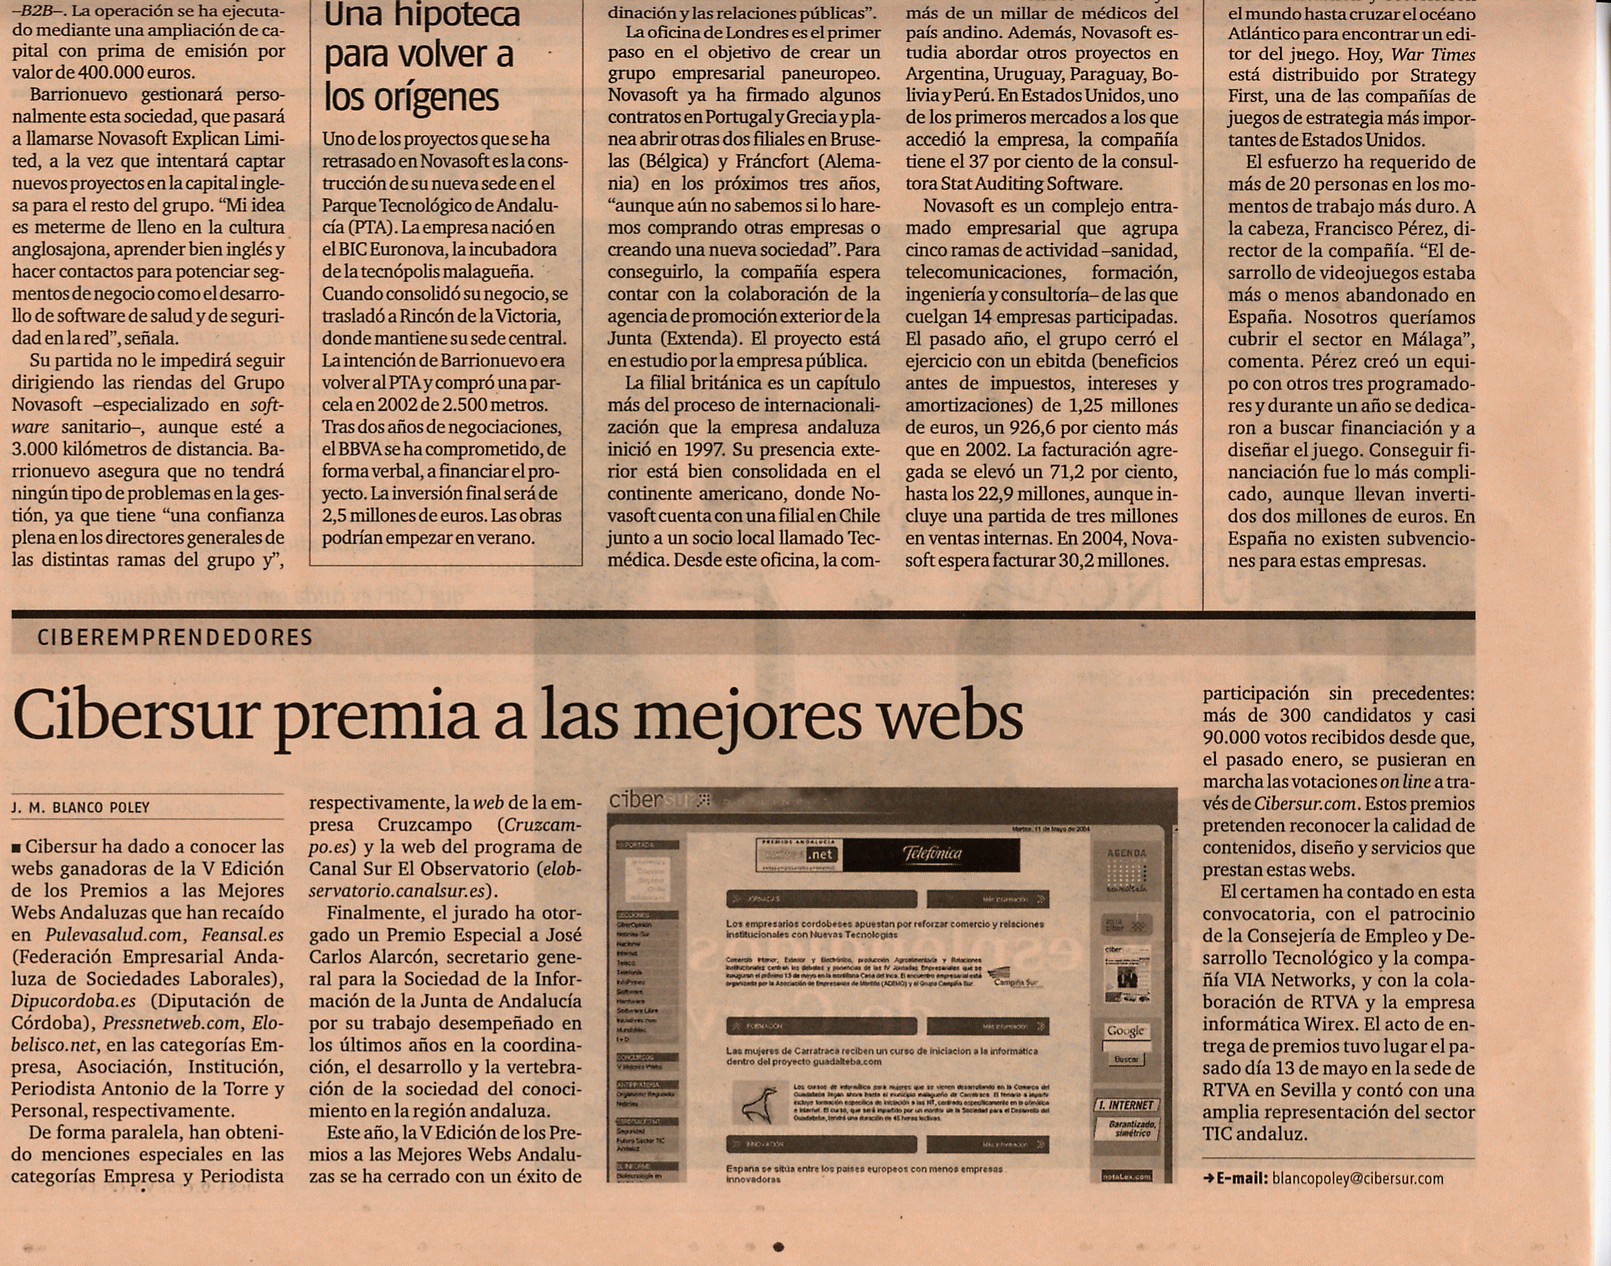 Diario de Sevilla / Suplemento Economa & Empleo (16-05-2004) (B) / Pulse Aqu para Visitar su Web